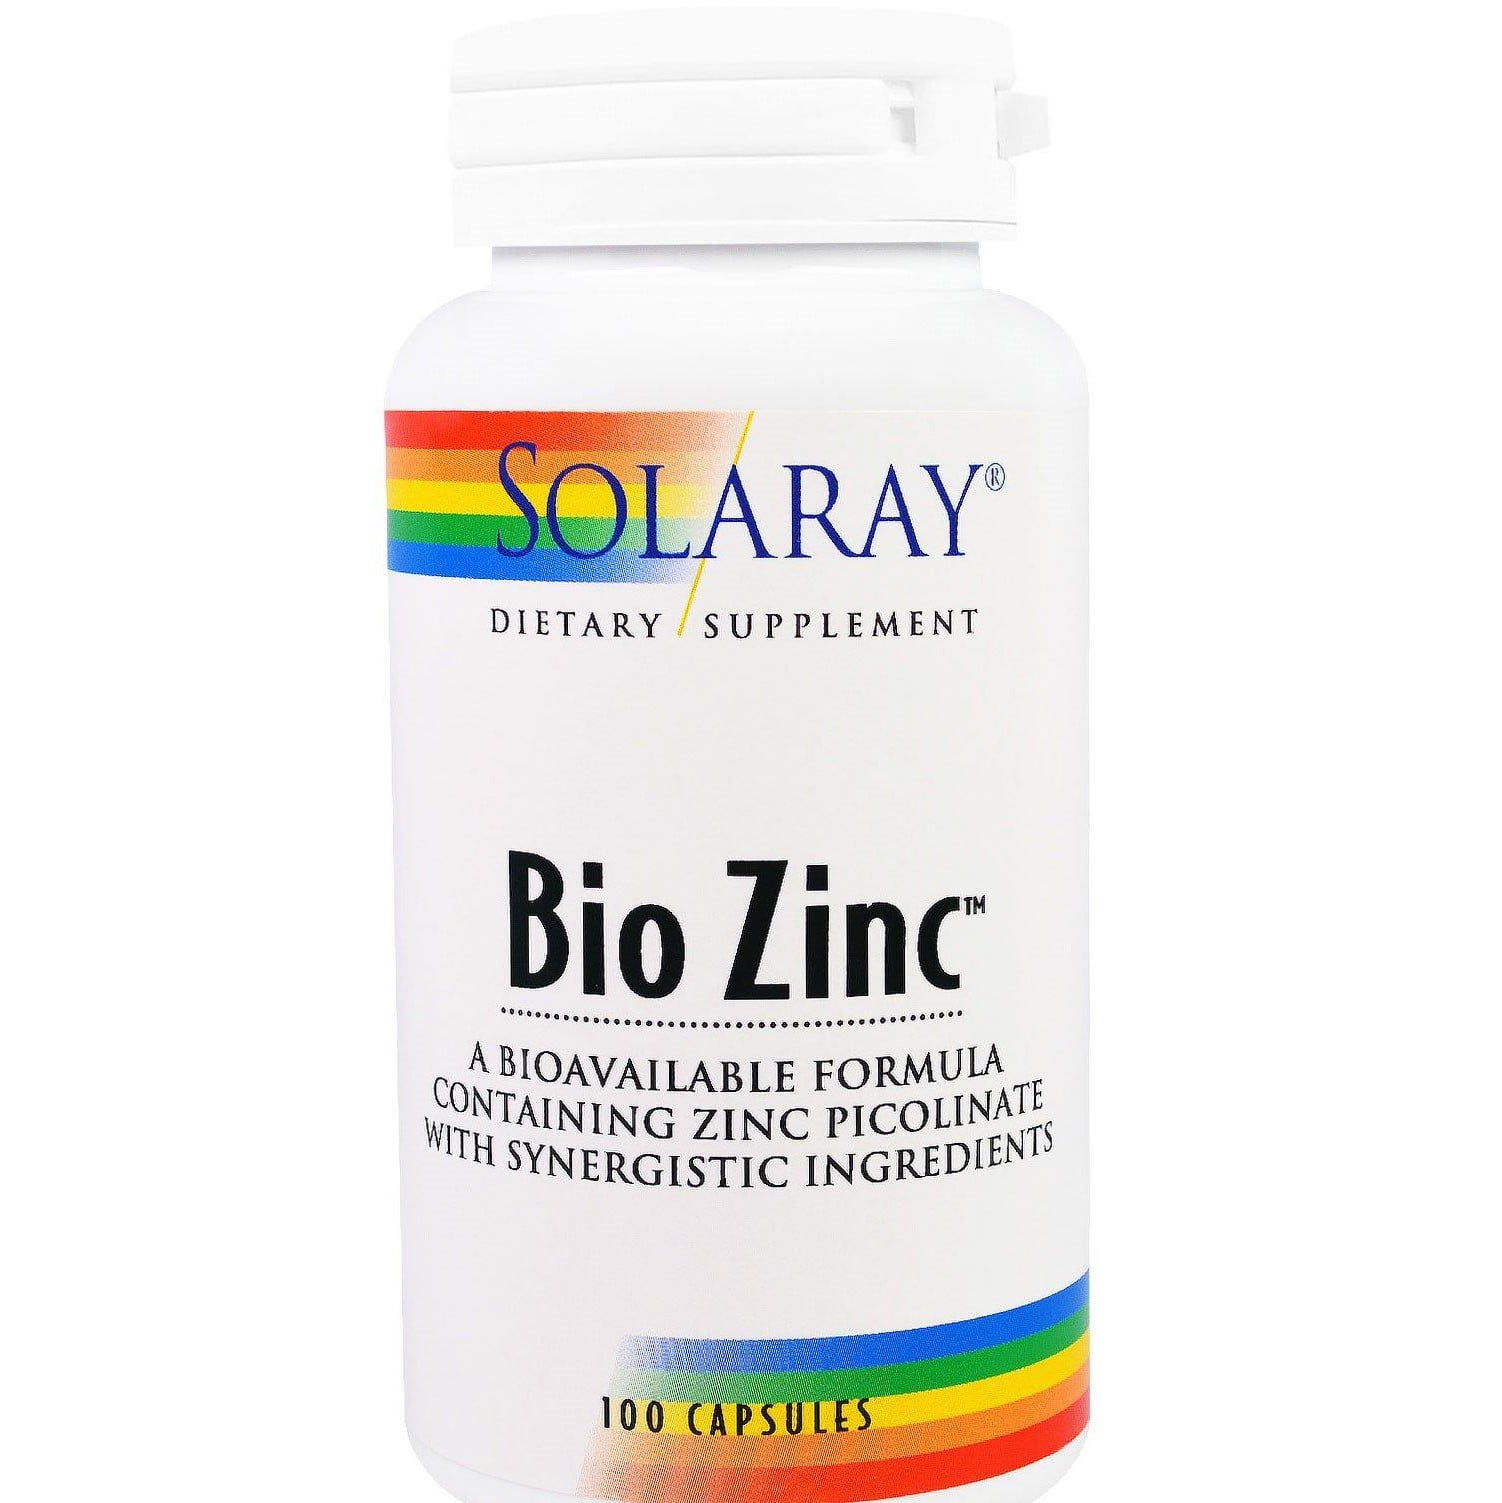 دواء بيو زنك Bio Zinc دواعي استعماله وحفظه وتخزينه